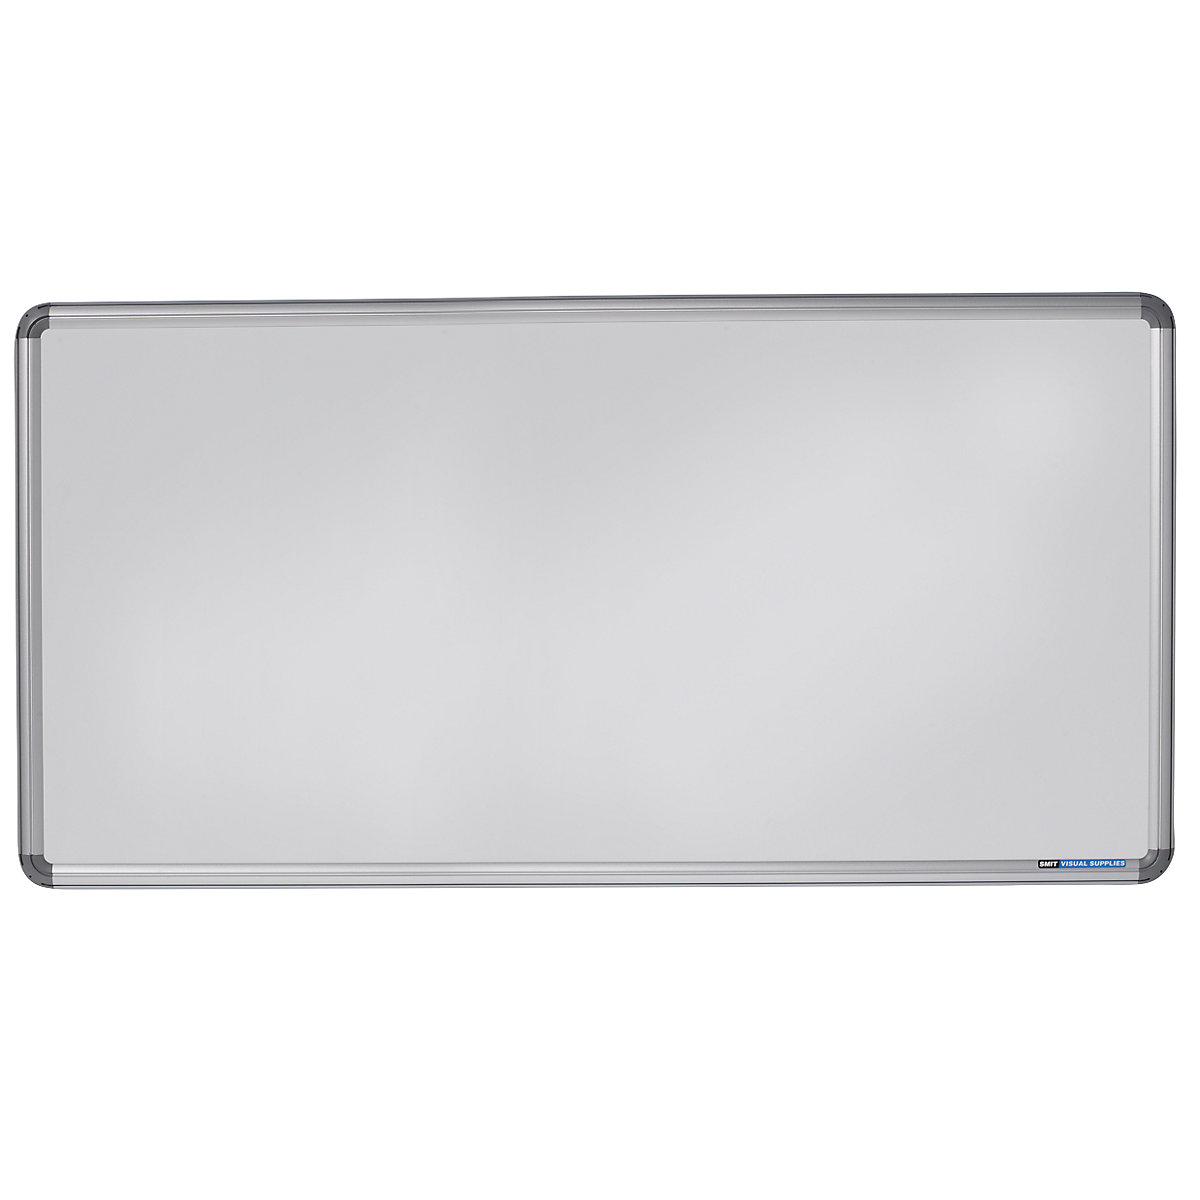 EUROKRAFTpro – Elegantní nástěnná tabule, ocelový plech, lakováno, š x v 2000 x 1000 mm, bílá